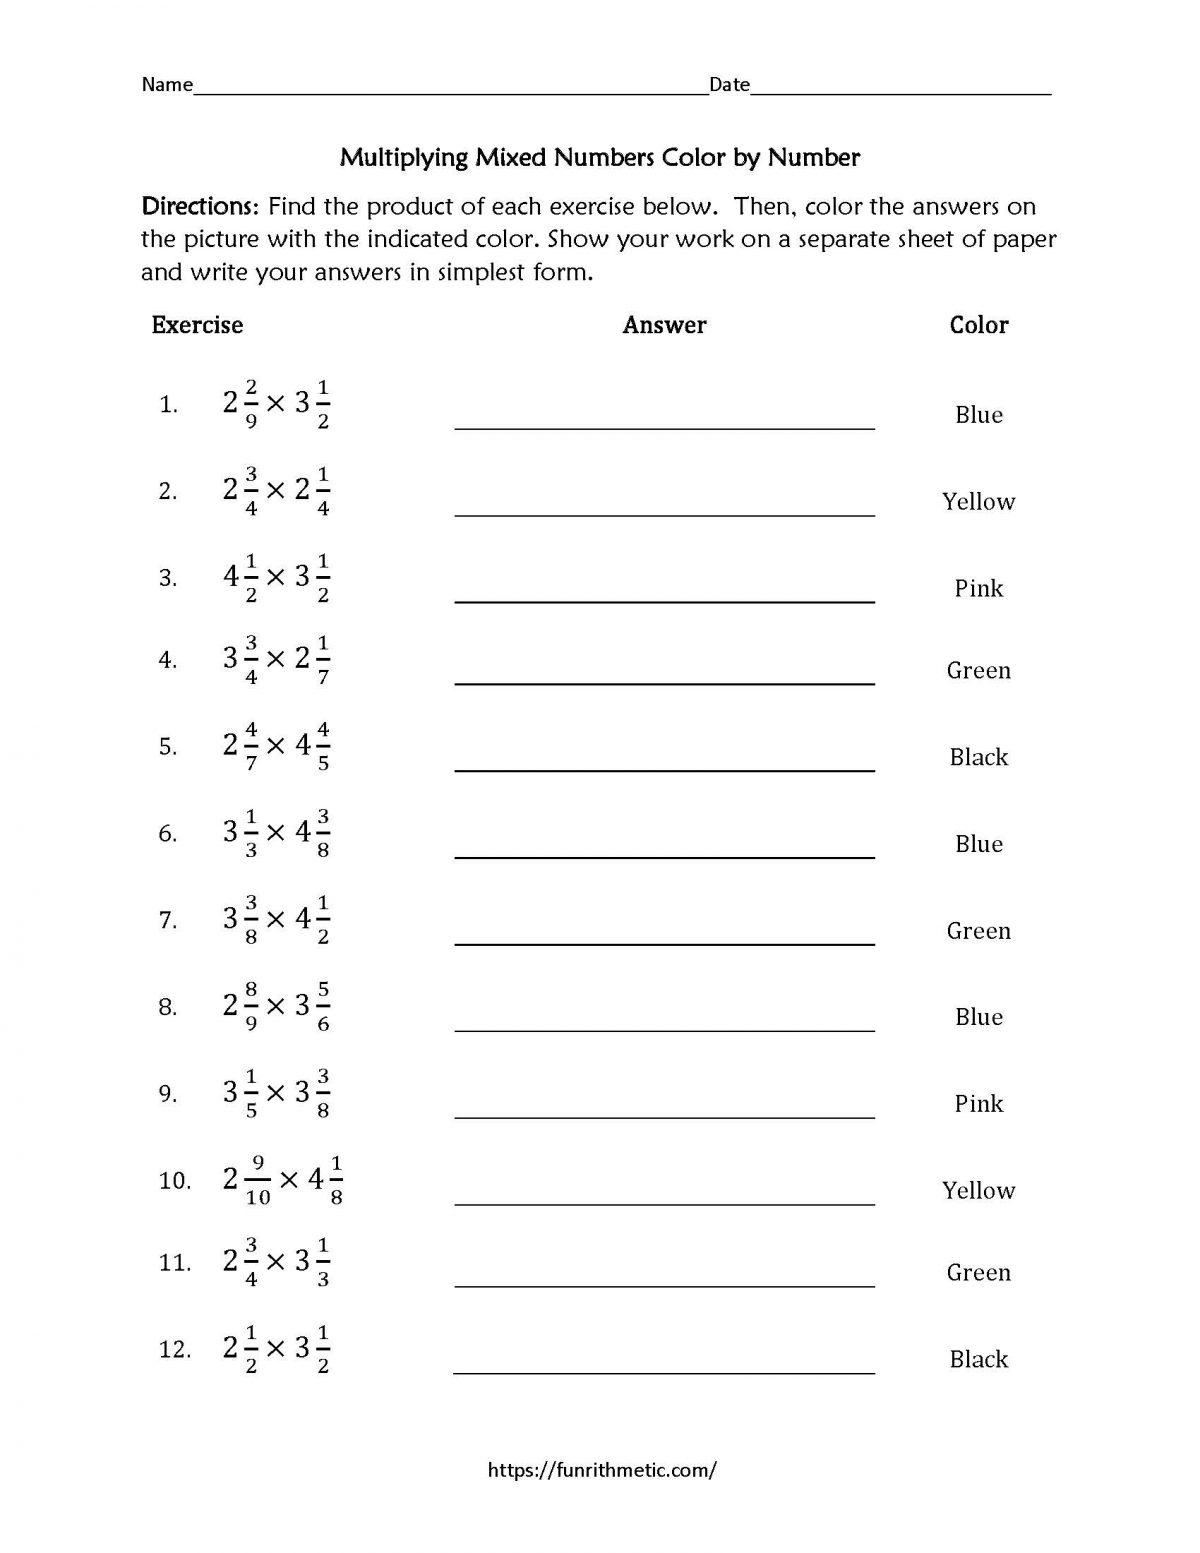 Multiplying Mixed Numbers worksheet